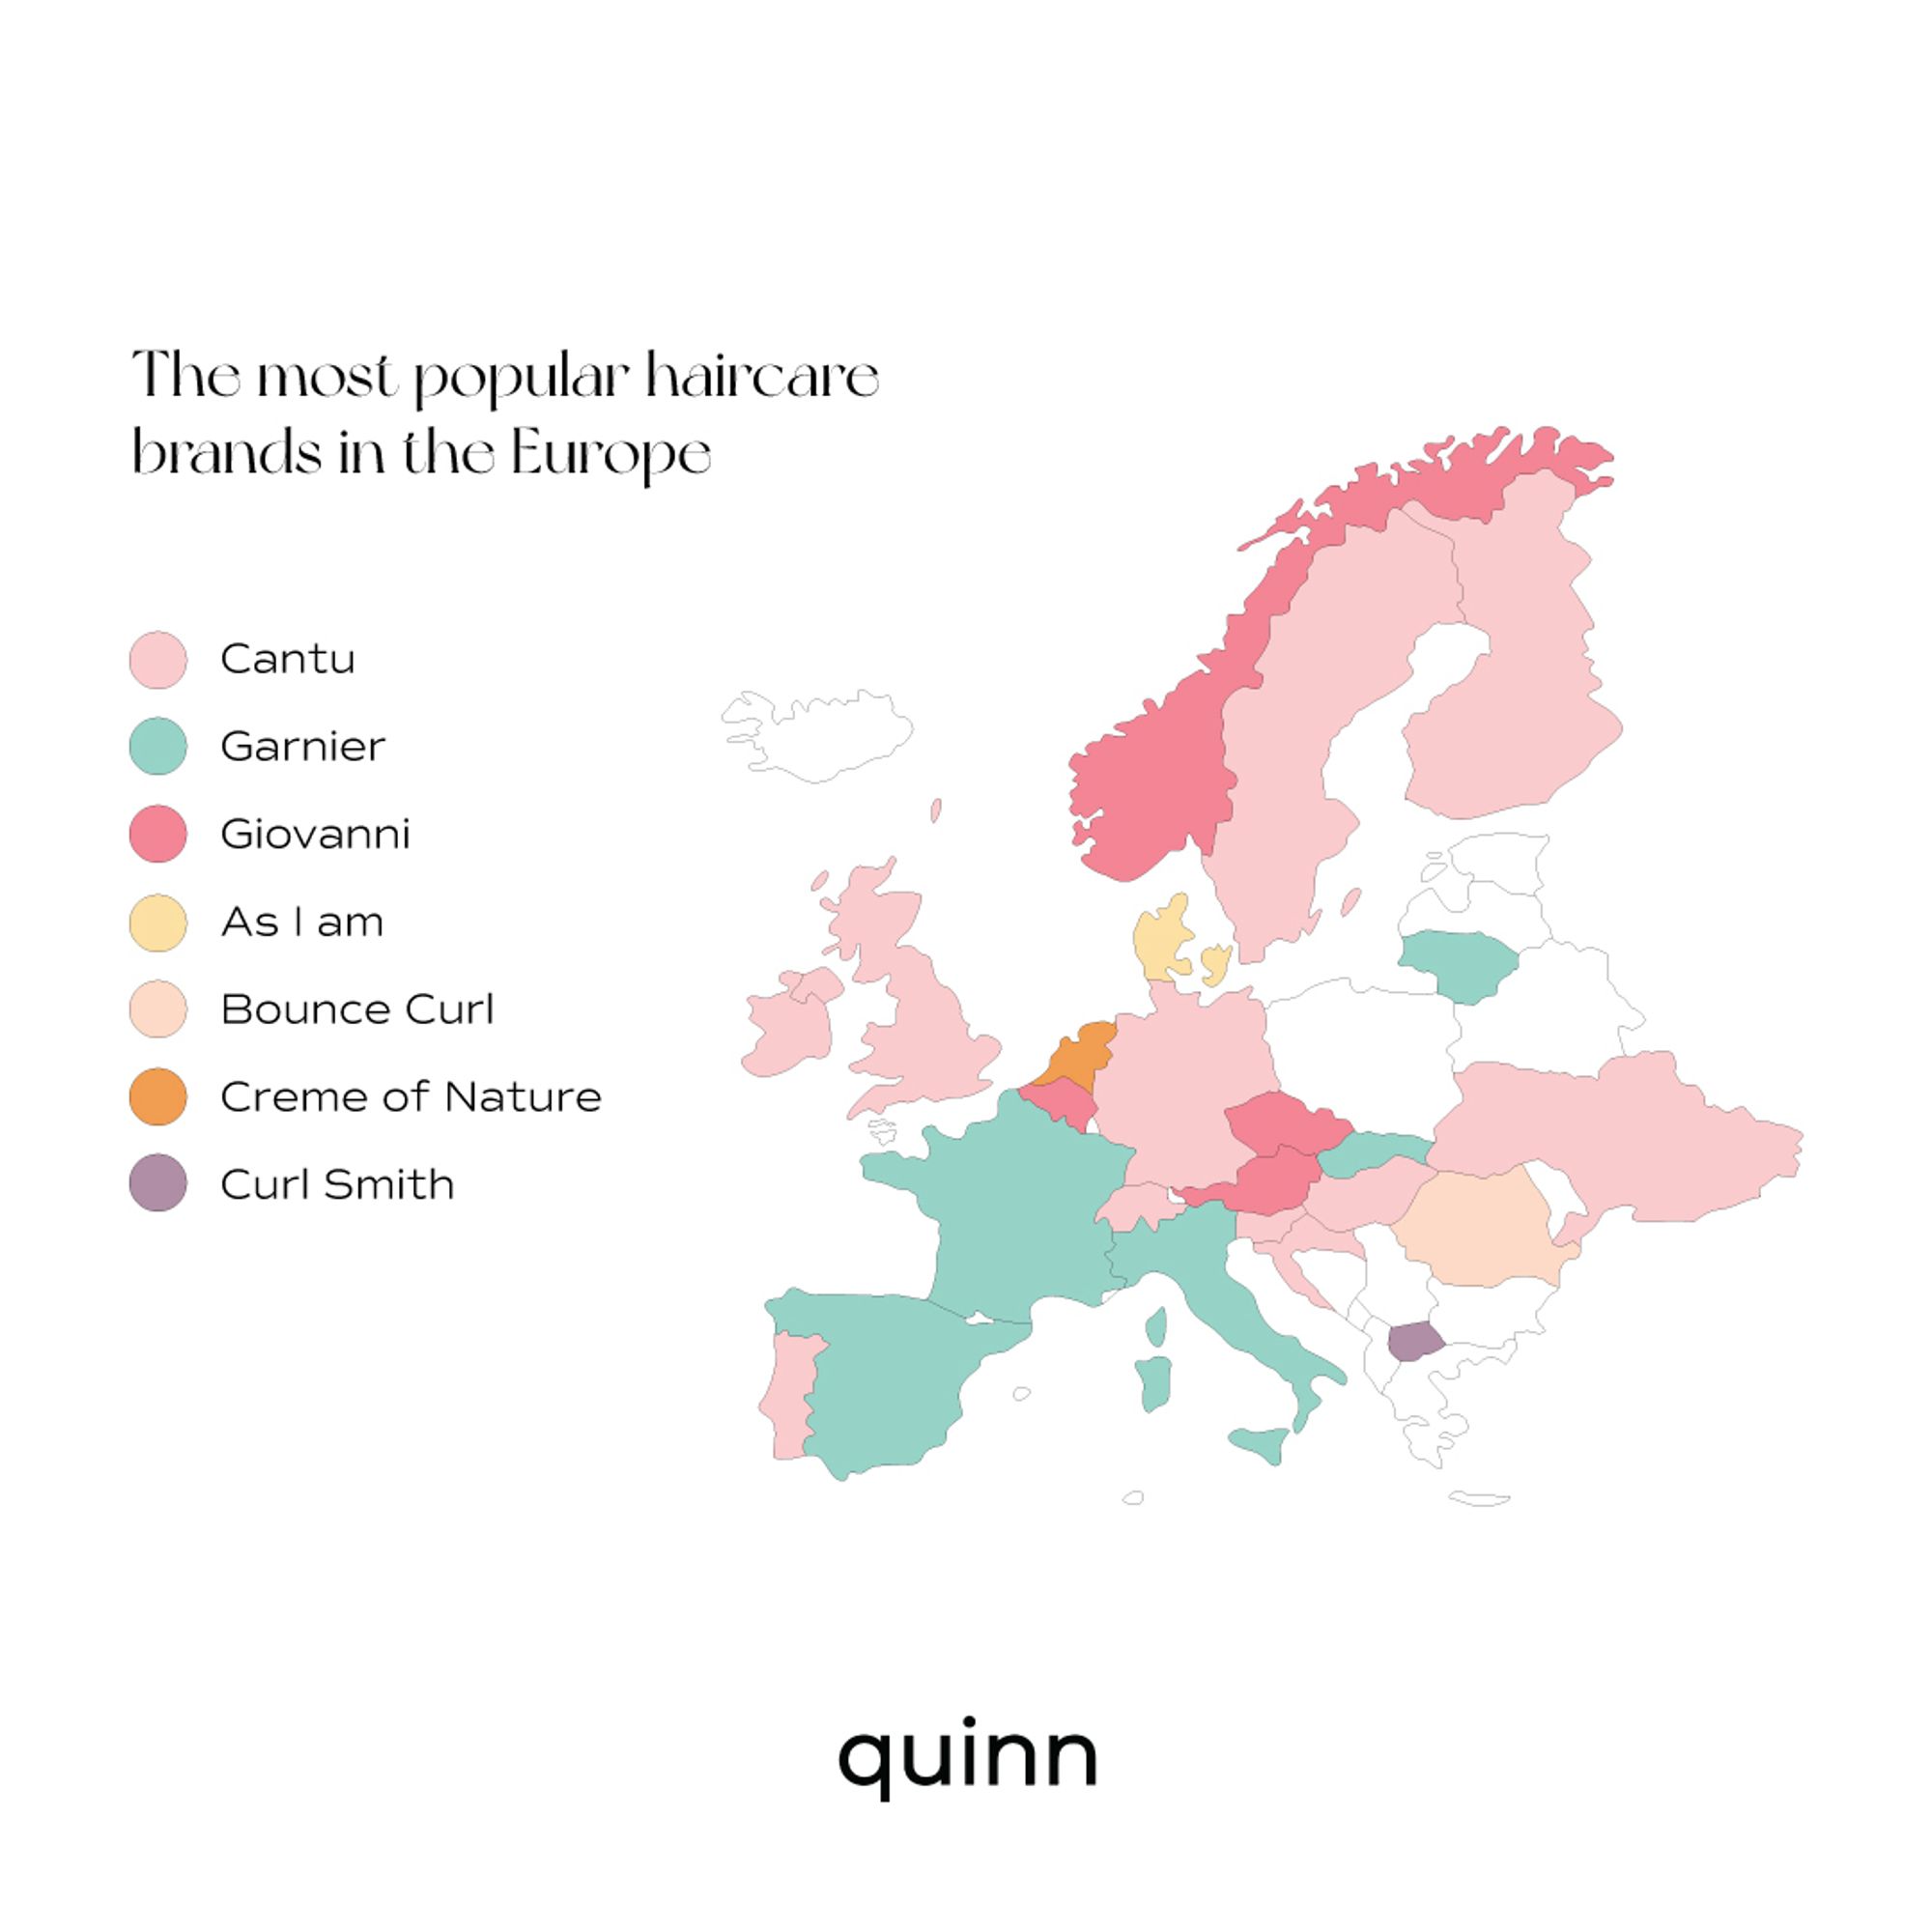 Source: Quinn's Database